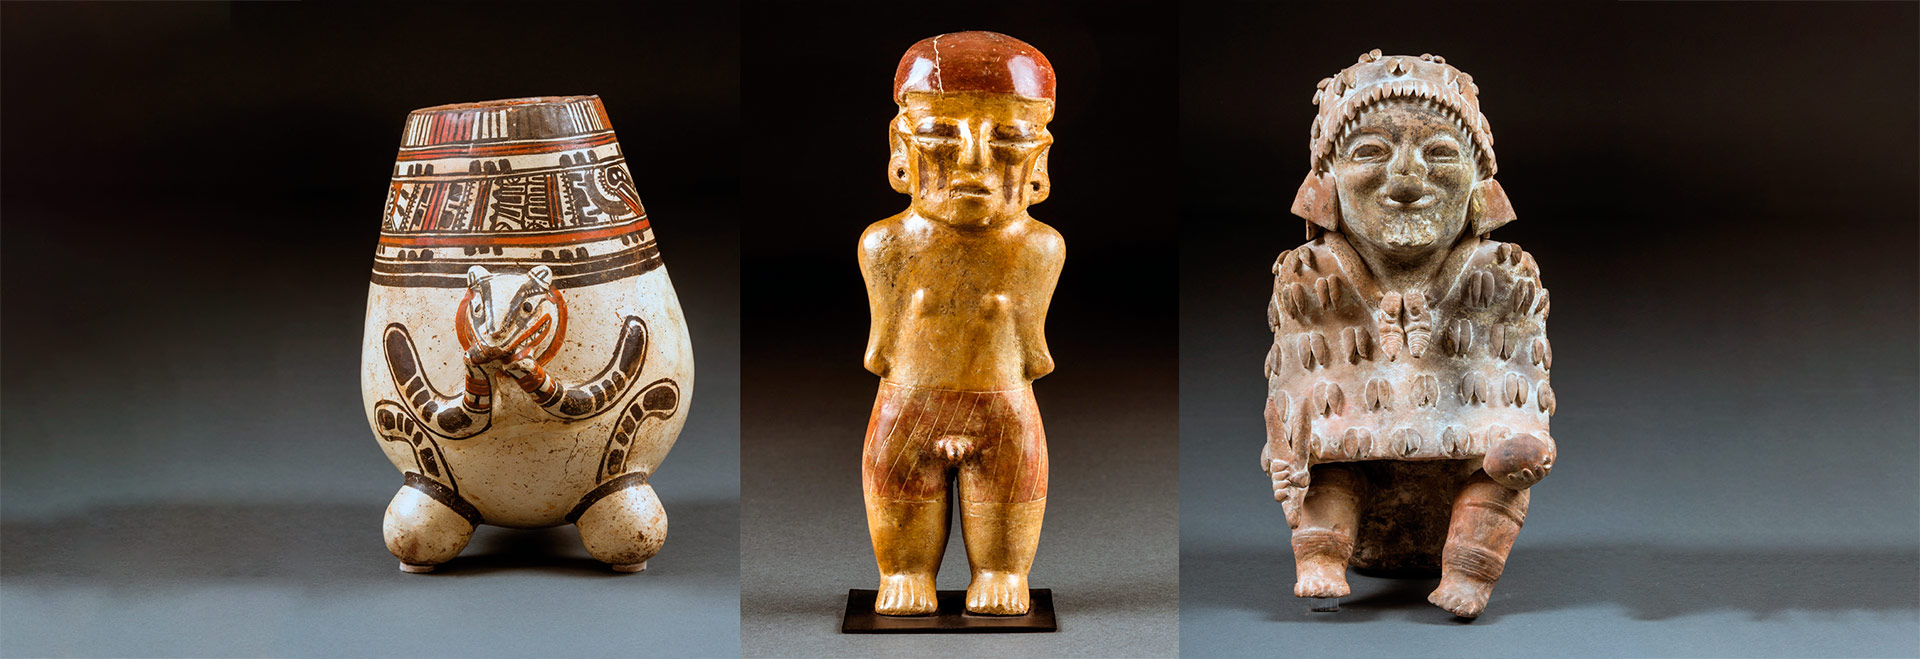 O livro reúne fotos, descrições e análises de 794 artefatos, dos quais 599 são peças inteiras e 195, fragmentos de estatuetas, esculturas, vasos e peças de cerâmica das Américas